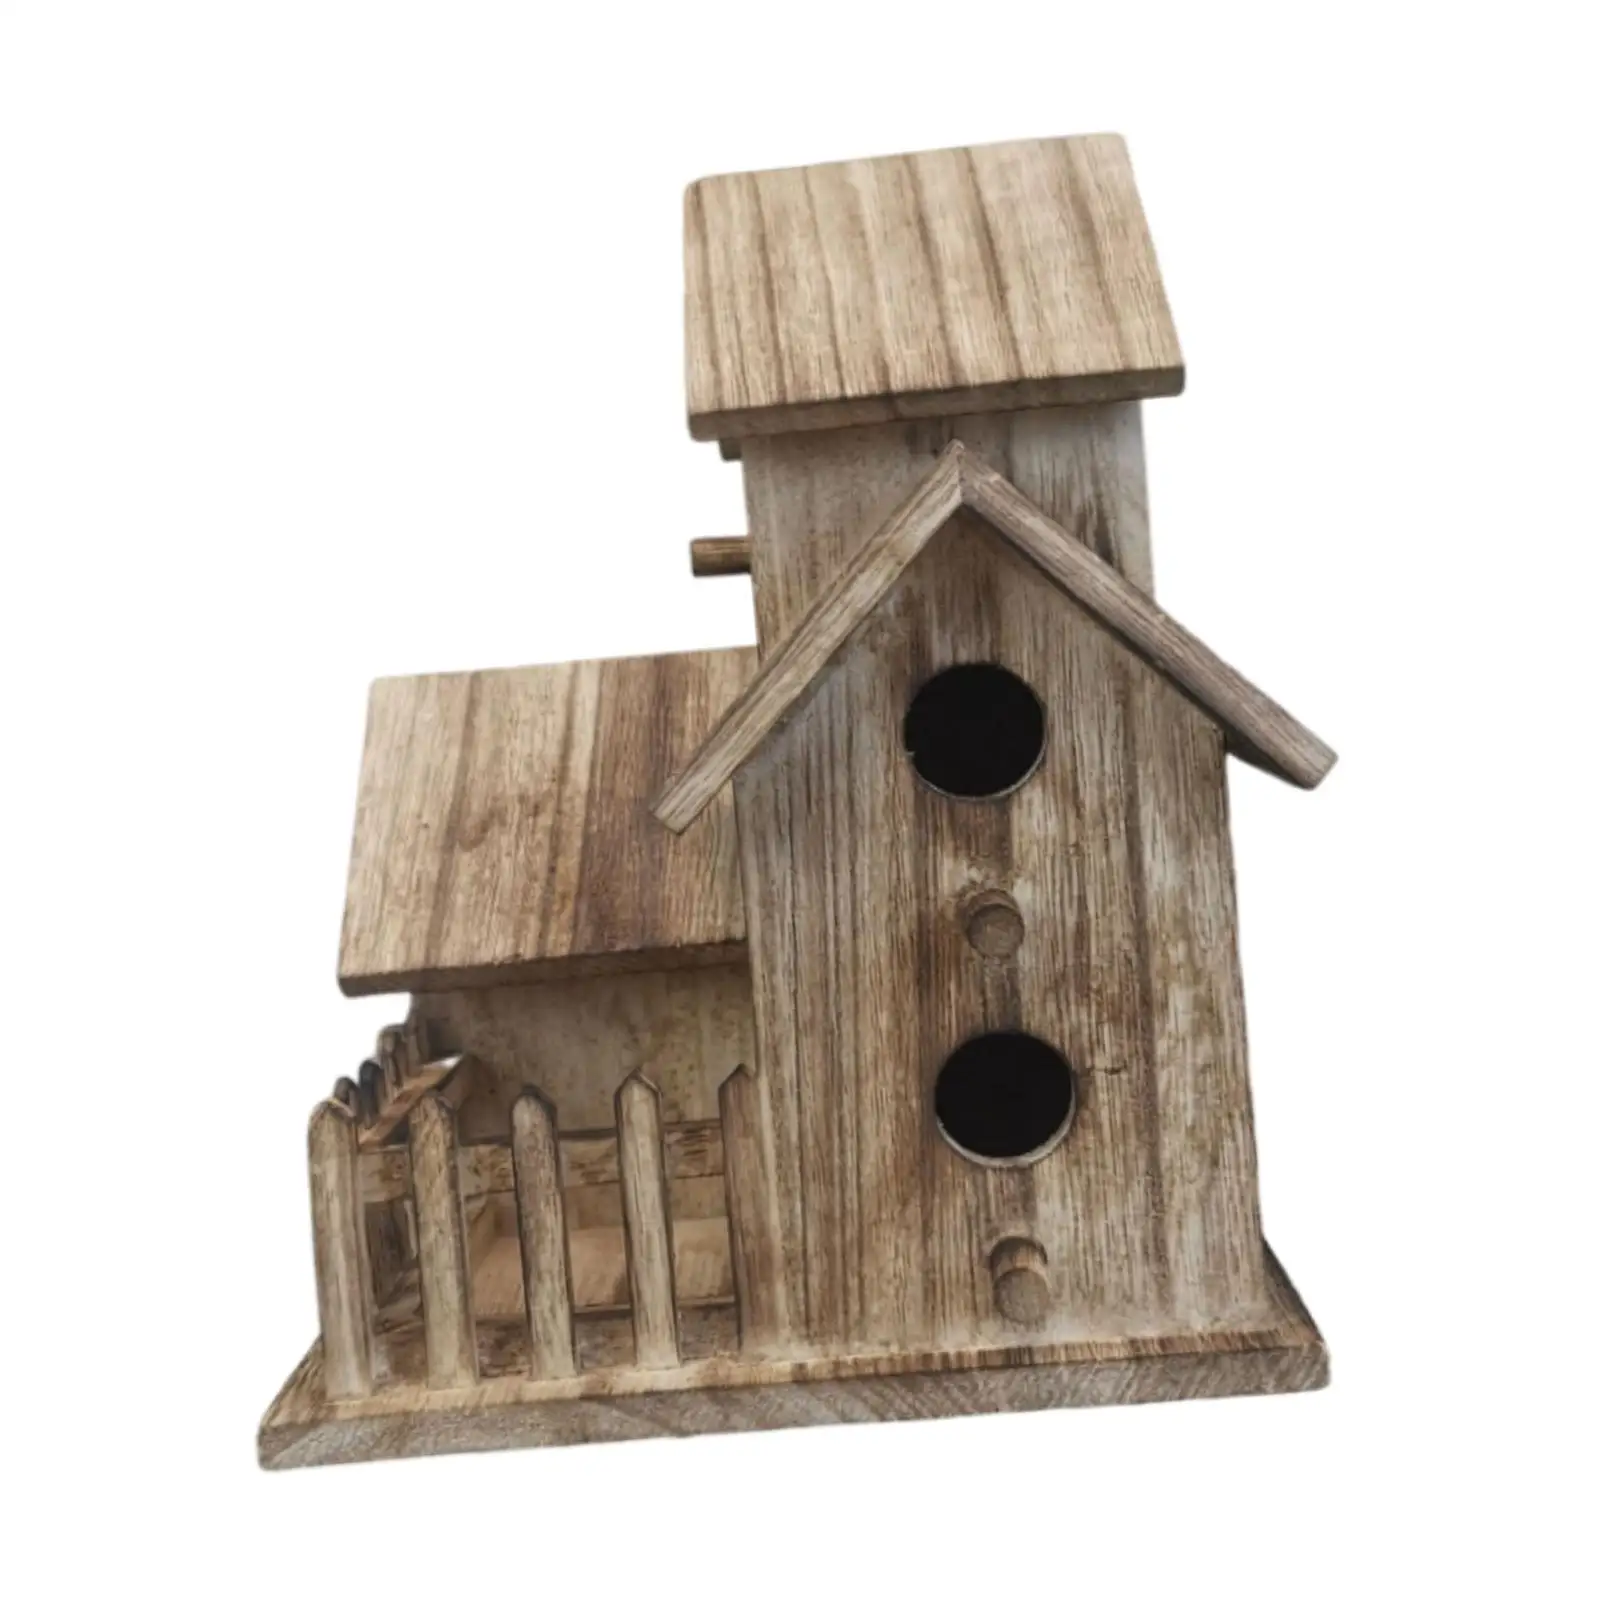 Bird House with 4 Holes Rustic Bluebird Finch Cardinals Birdhouse Bird Nest Box for Garden Courtyard Patio Decor